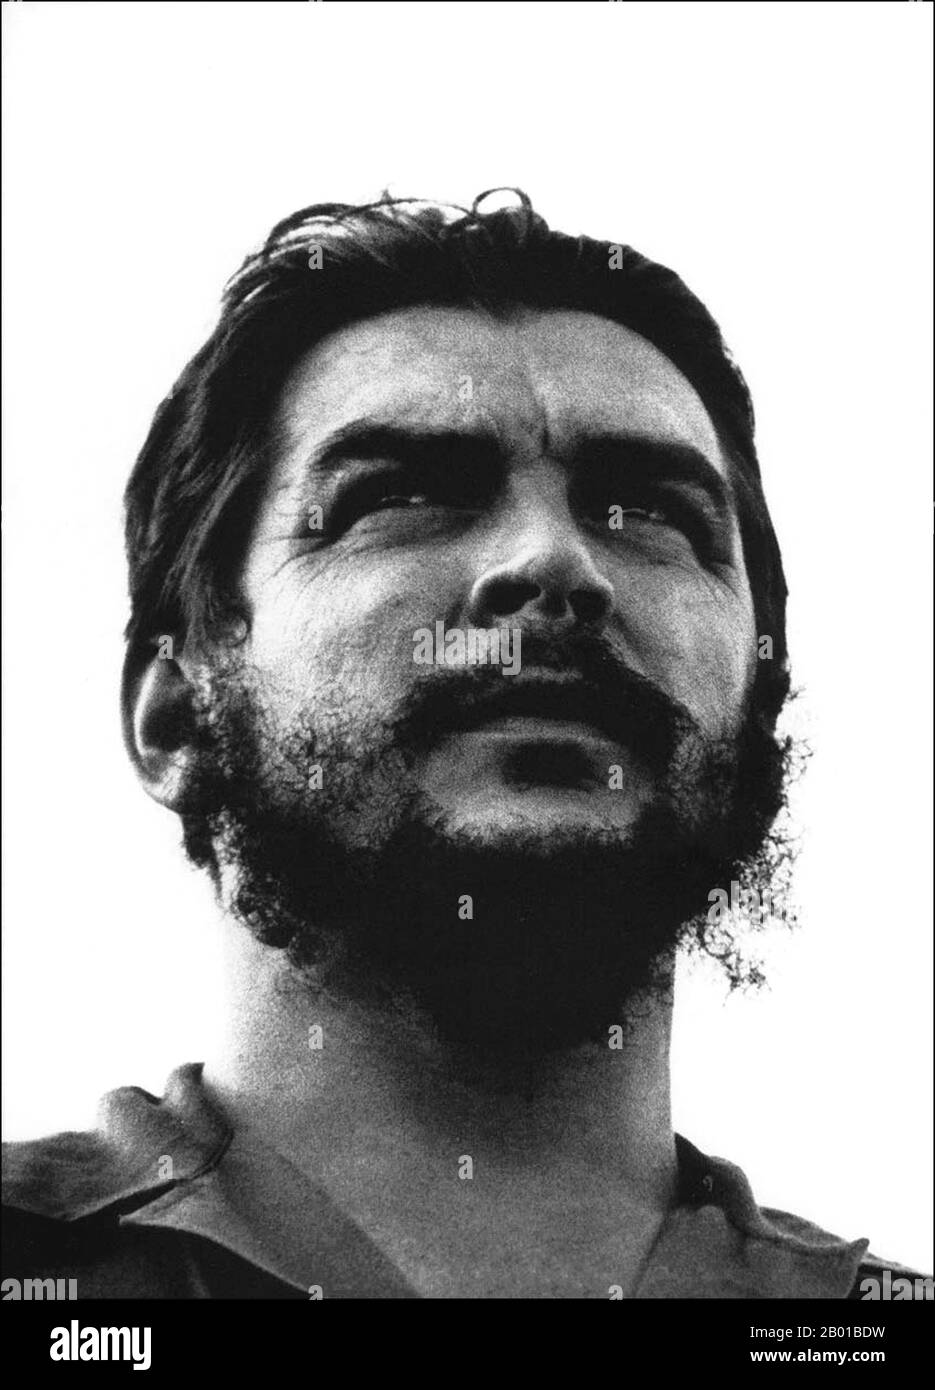 Cuba/Argentina: Ernesto 'Che' Guevara (14 de junio de 1928 - 9 de octubre de 1967), conocido comúnmente como El Che o simplemente Che, marxista argentino revolucionario, médico, autor, intelectual, Líder guerrillero, diplomático y teórico militar, así como una figura importante de la Revolución Cubana. Foto de Osvaldo Salas (1914-1992, sin copyright), c. 1960. Mientras vivía en la Ciudad de México, Guevara conoció a Raúl y Fidel Castro, se unió a su Movimiento del 26th de Julio, y navegó a Cuba a bordo del yate Granma, con la intención de derrocar al dictador cubano Fulgencio Batista, respaldado por Estados Unidos. Foto de stock